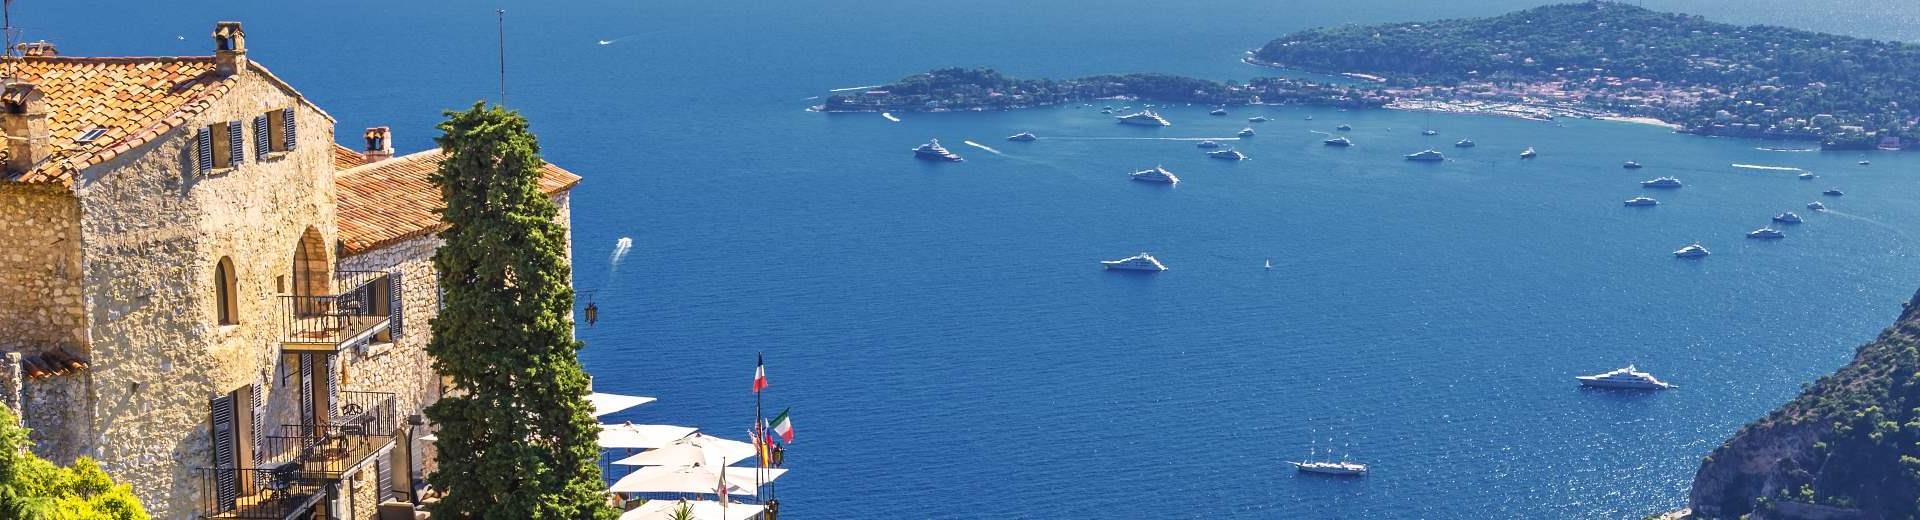 Vakantiehuis Monaco - het kleine staatje aan de Middellandse Zee - EuroRelais